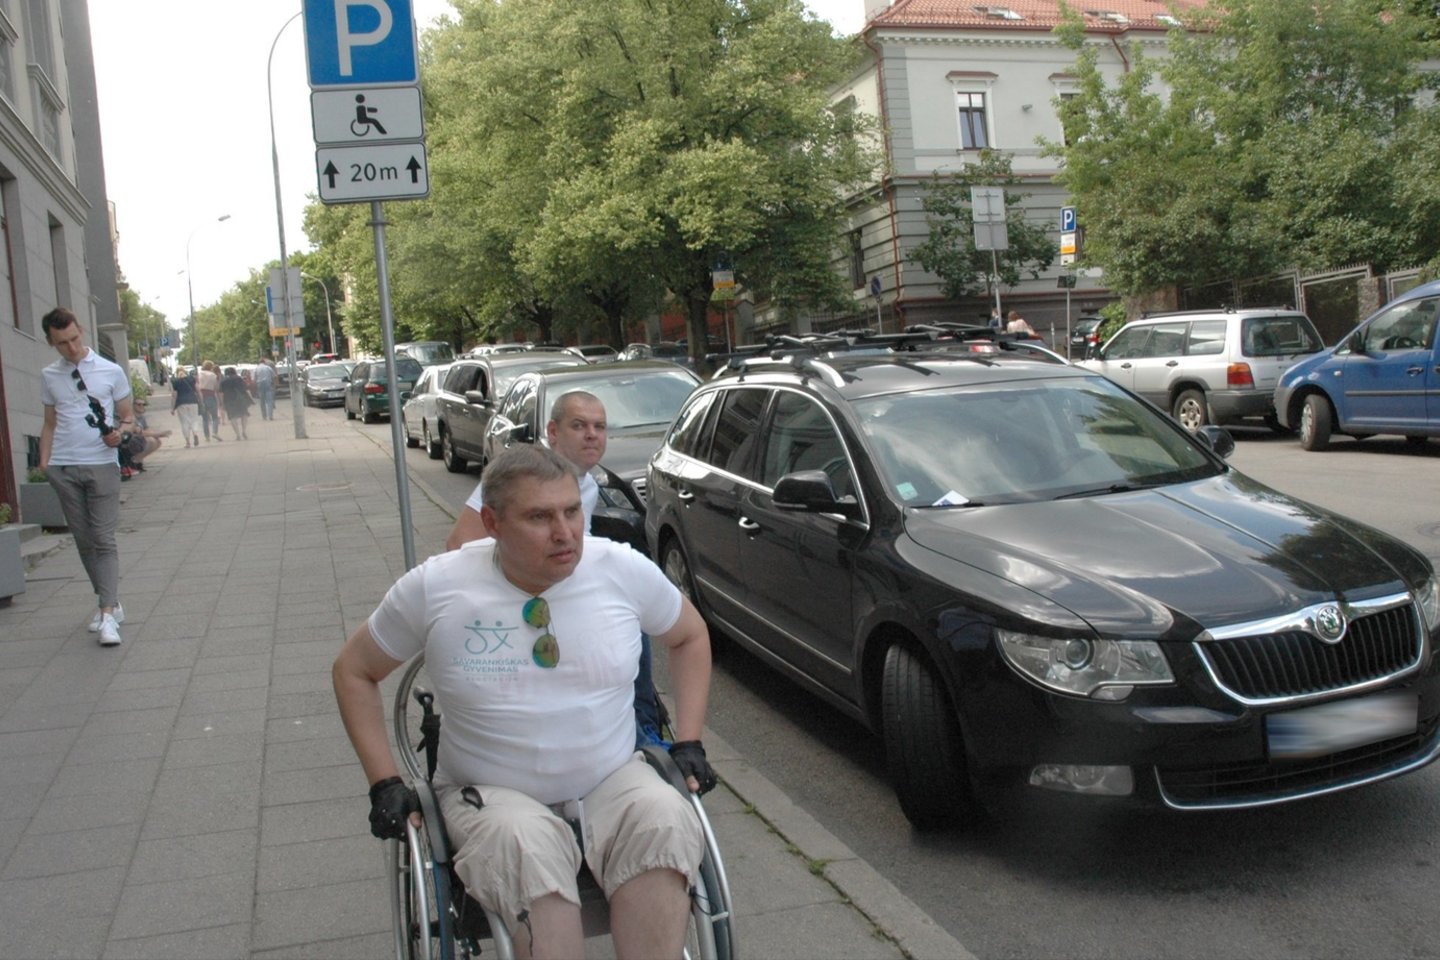  Asociacija „Savarankiškas gyvenimas“ drauge su Vilniaus apskrities policijos komisariatu surengė akciją ir tikrino, ar automobiliai statomi neįgaliesiems skirtose vietose.<br> L. Jakubauskienės nuotr.